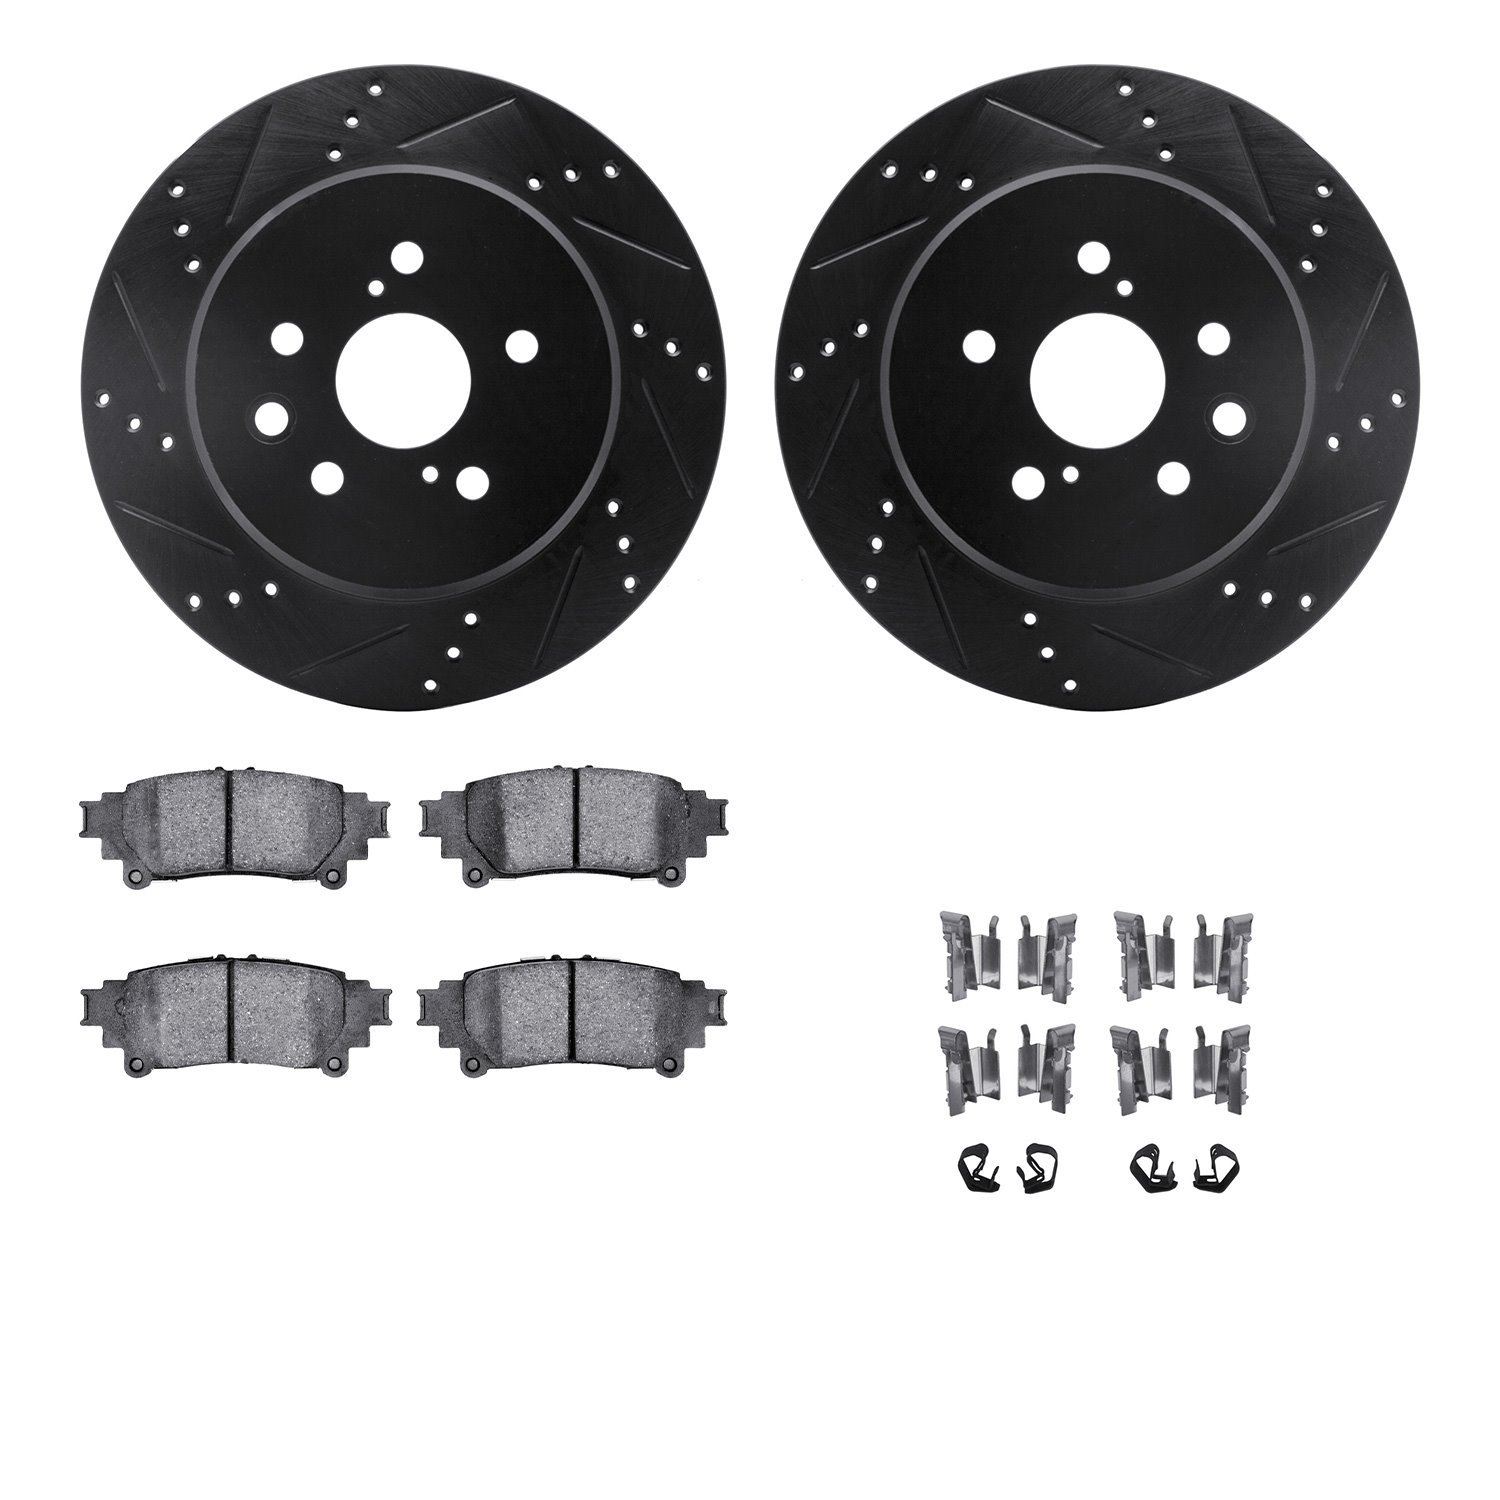 8312-75032 Drilled/Slotted Brake Rotors with 3000-Series Ceramic Brake Pads Kit & Hardware [Black], 2013-2020 Lexus/Toyota/Scion